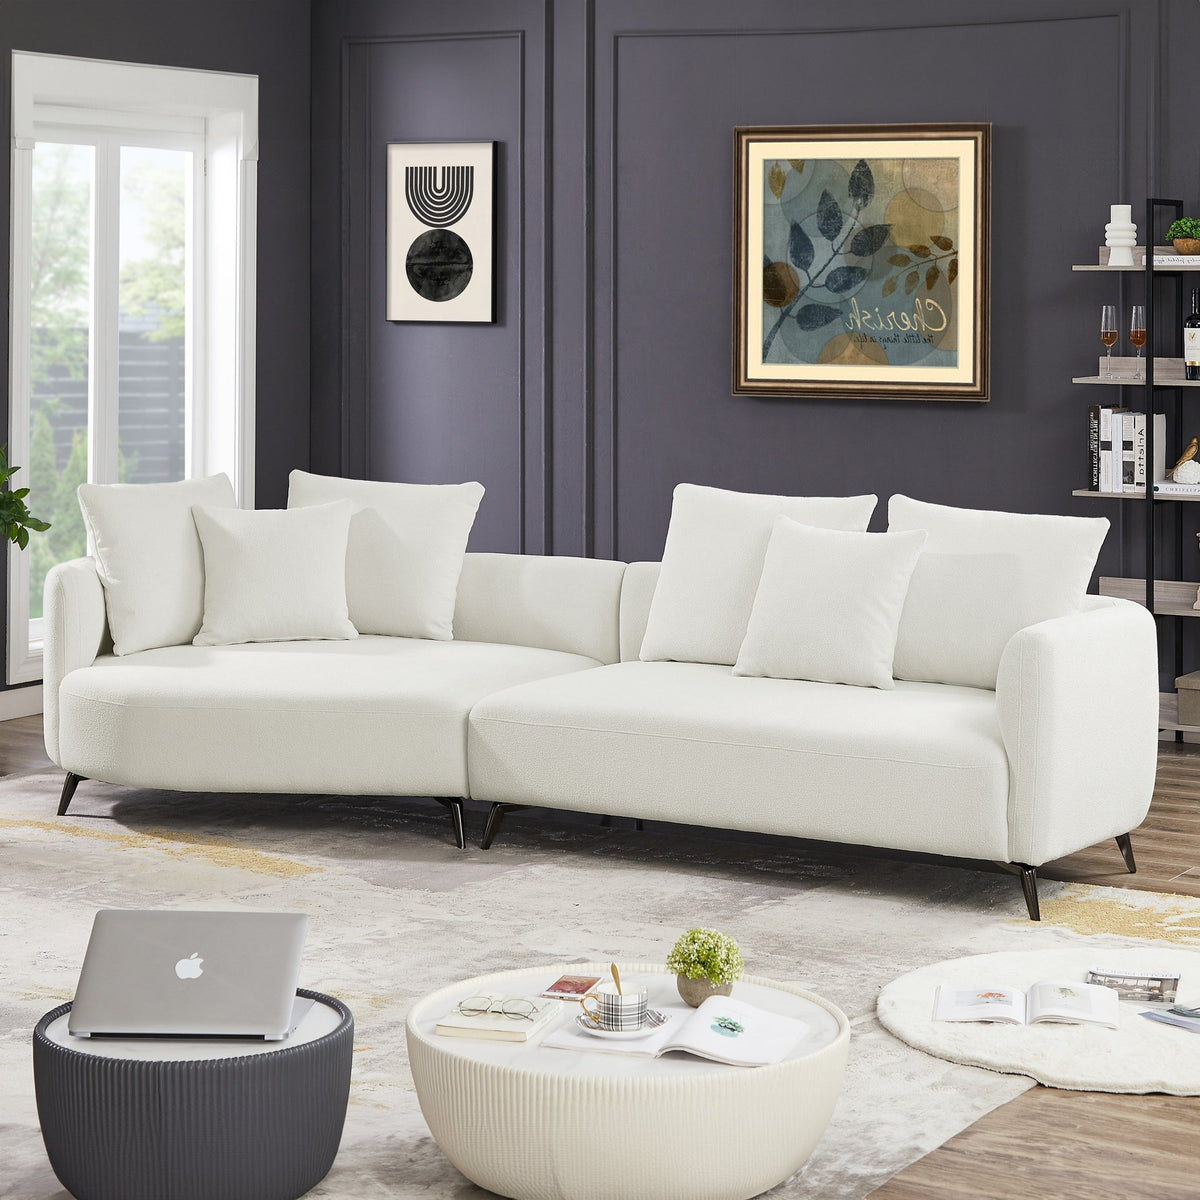 Lusia White Boucle Sectional Sofa Left - MidinMod Houston Tx Mid Century Furniture Store - Sofas 3